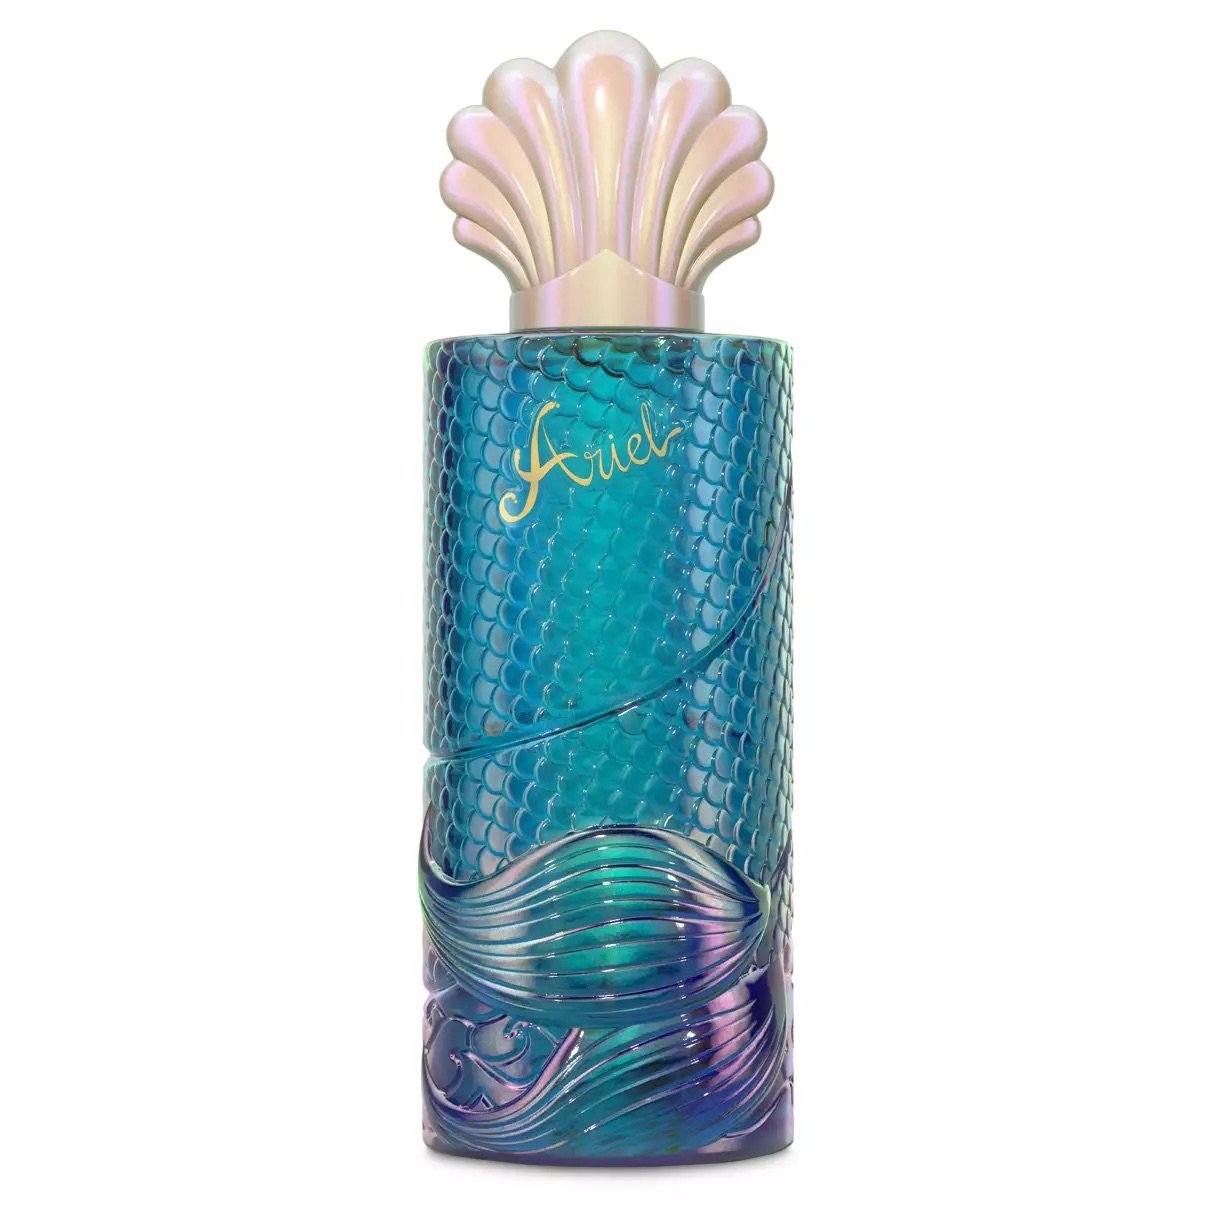 Ariel Define Me Perfume - The Little Mermaid Disney Store Disney Princess Parfum Merchandise Collection April 2024.jpeg